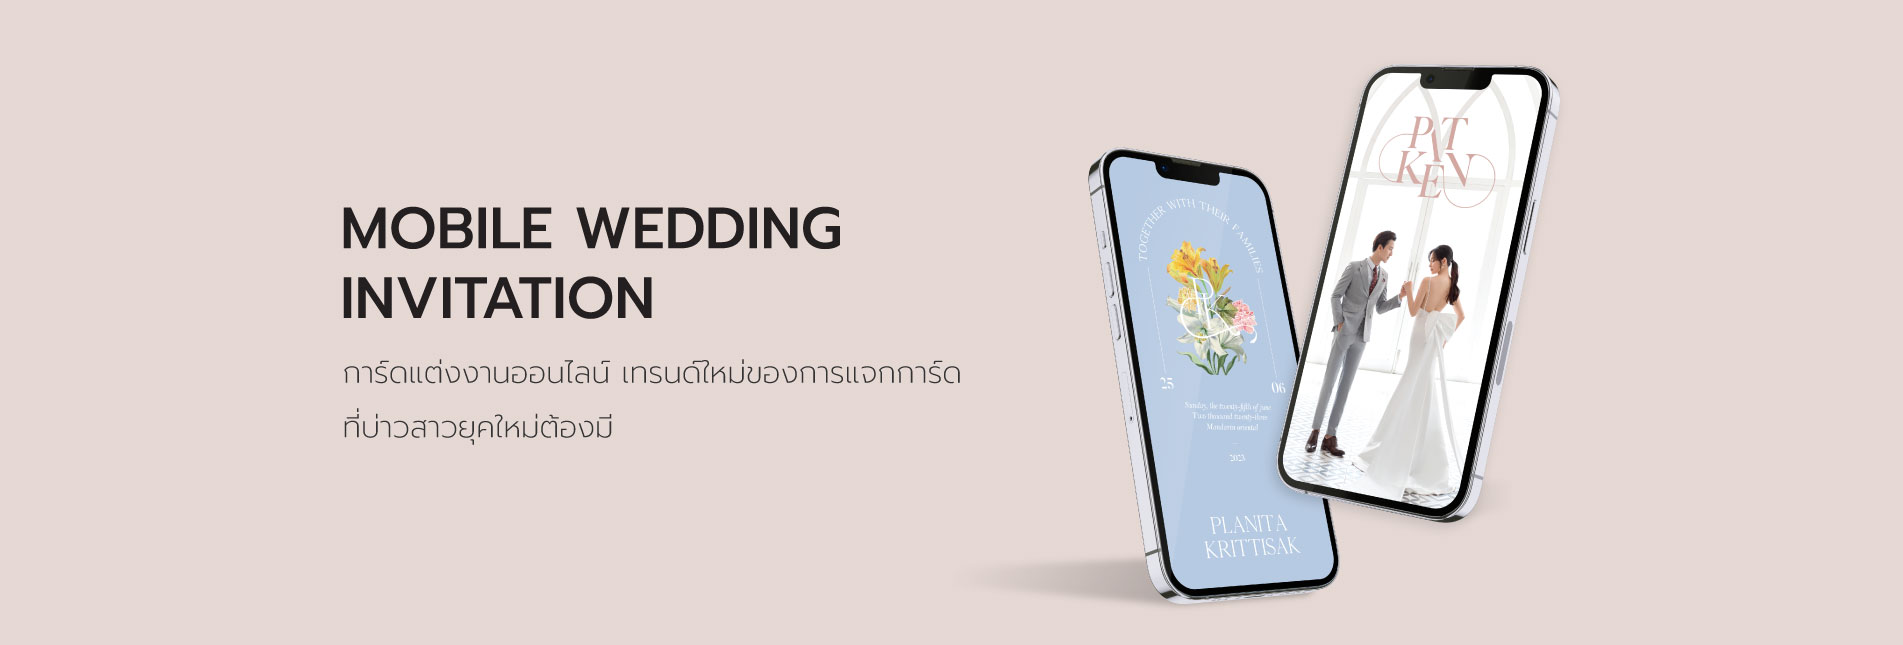 การ์ดแต่งงานออนไลน์ mobile wedding card